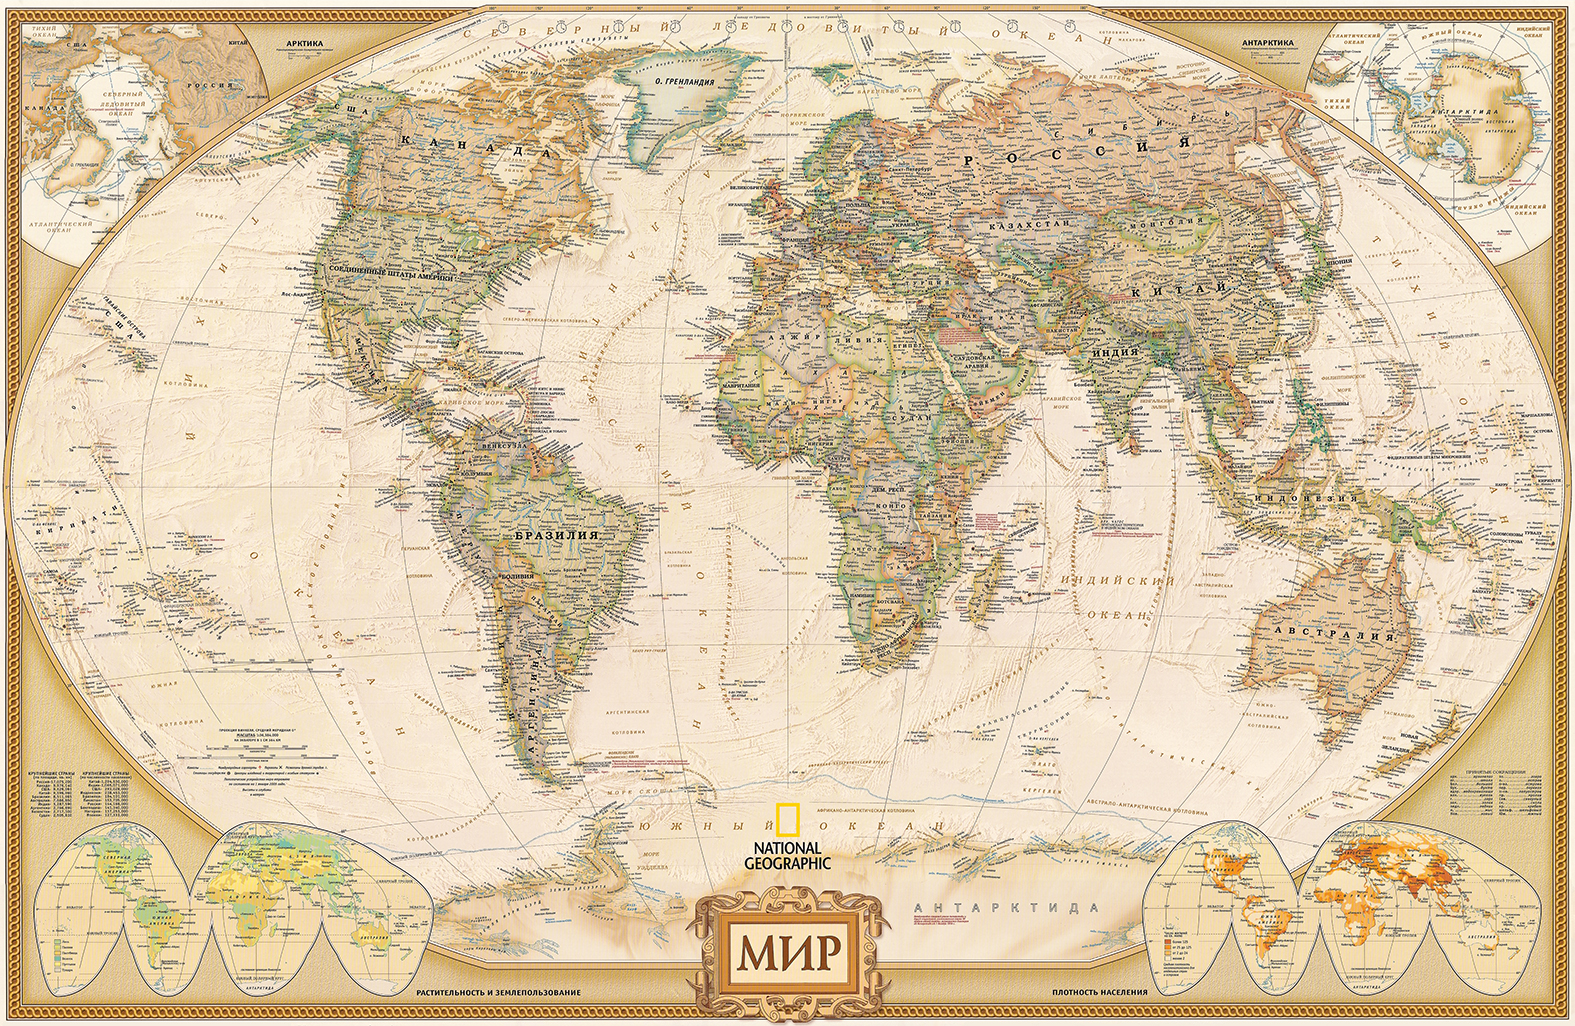 Фотообои Photostena Карта мира 3 x 2 м подарочная карта твой дом номинал 2000